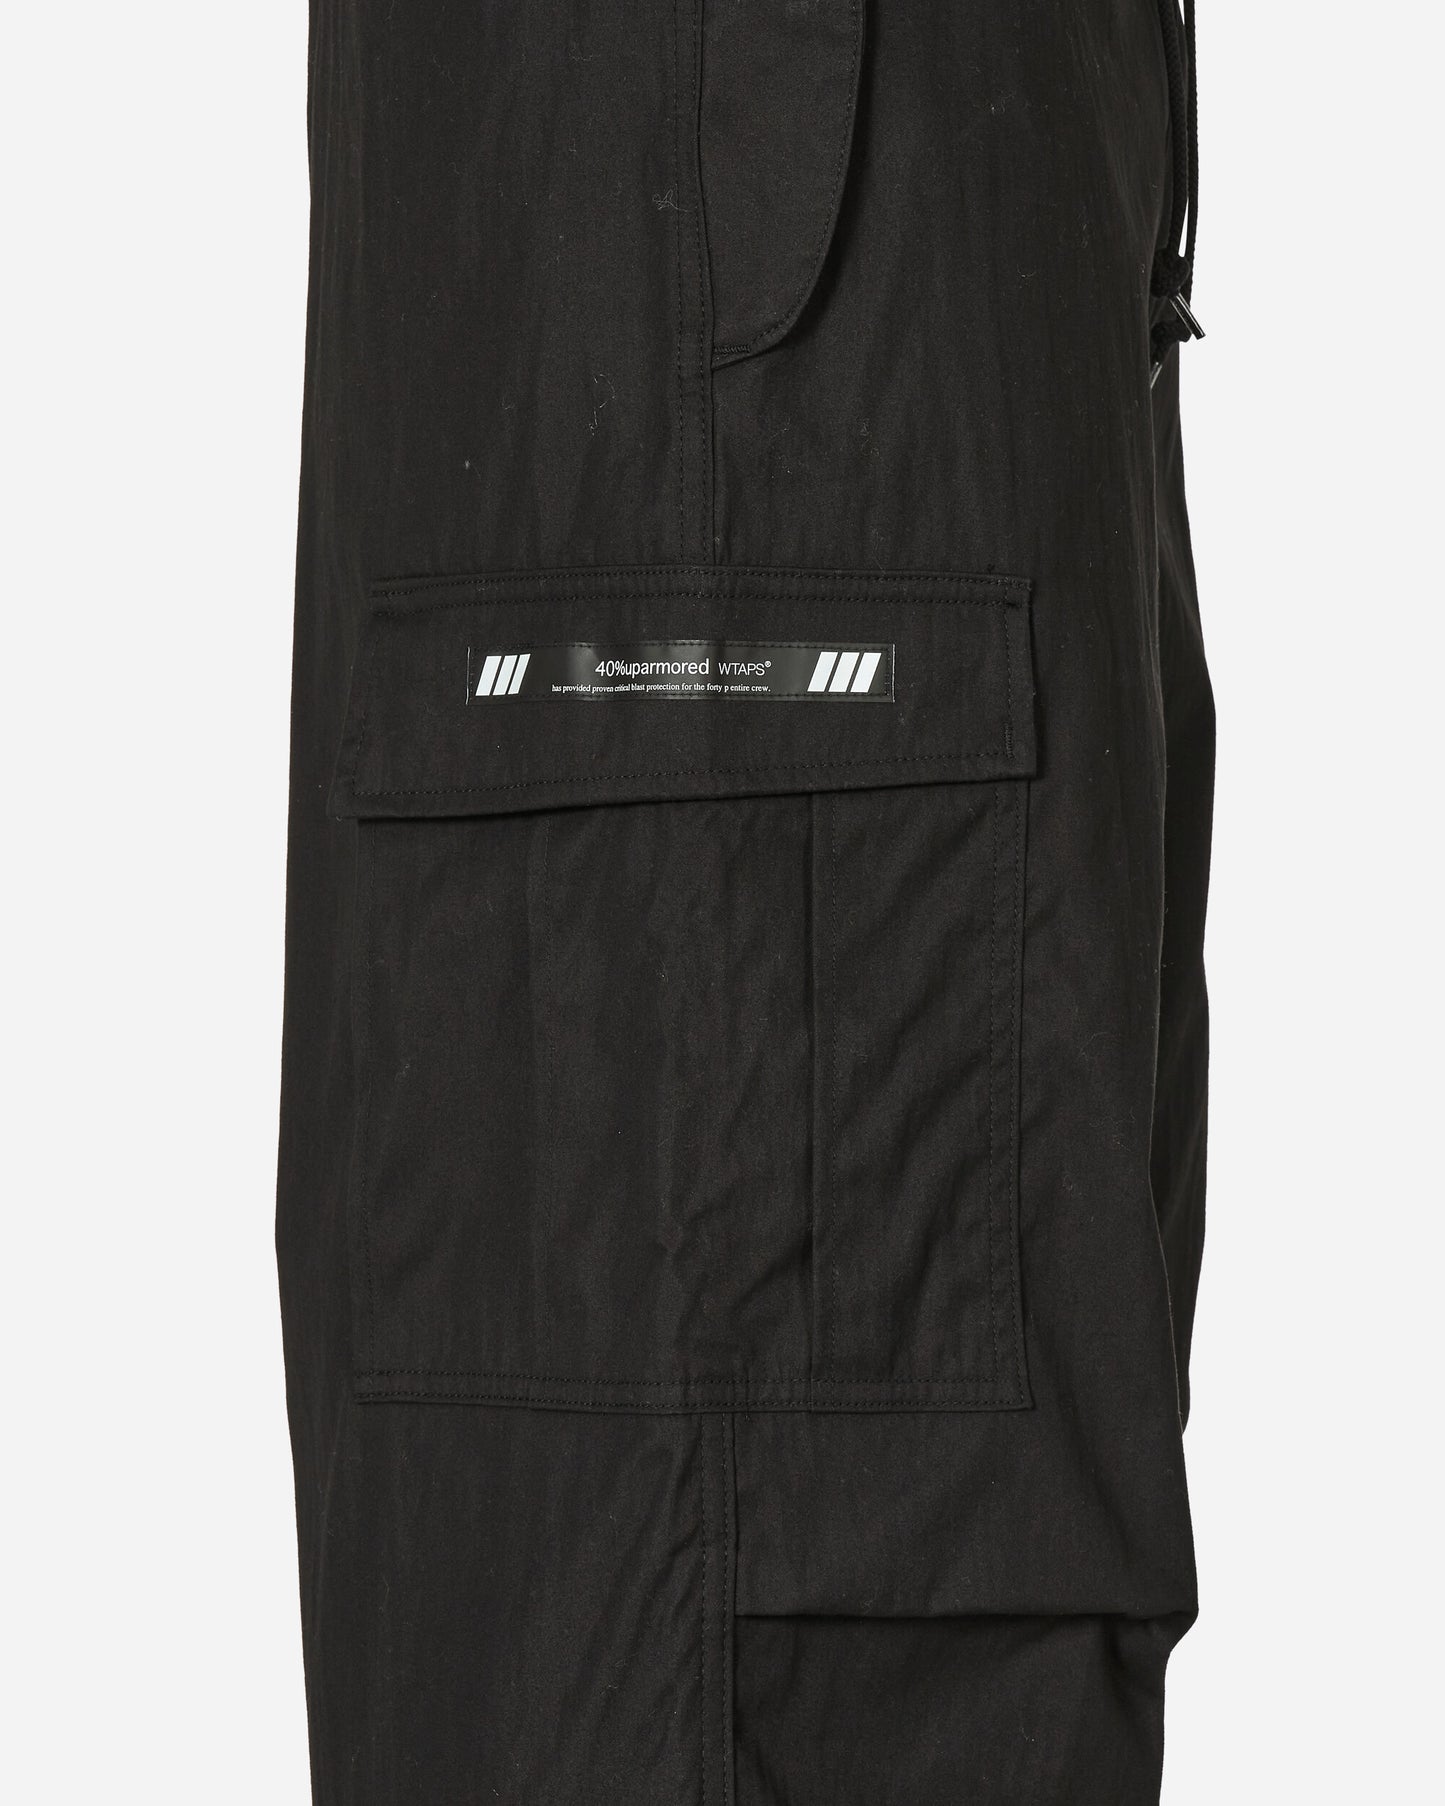 WTAPS Trouser 21 Black Pants Cargo 232WVDT-PTM07 BK